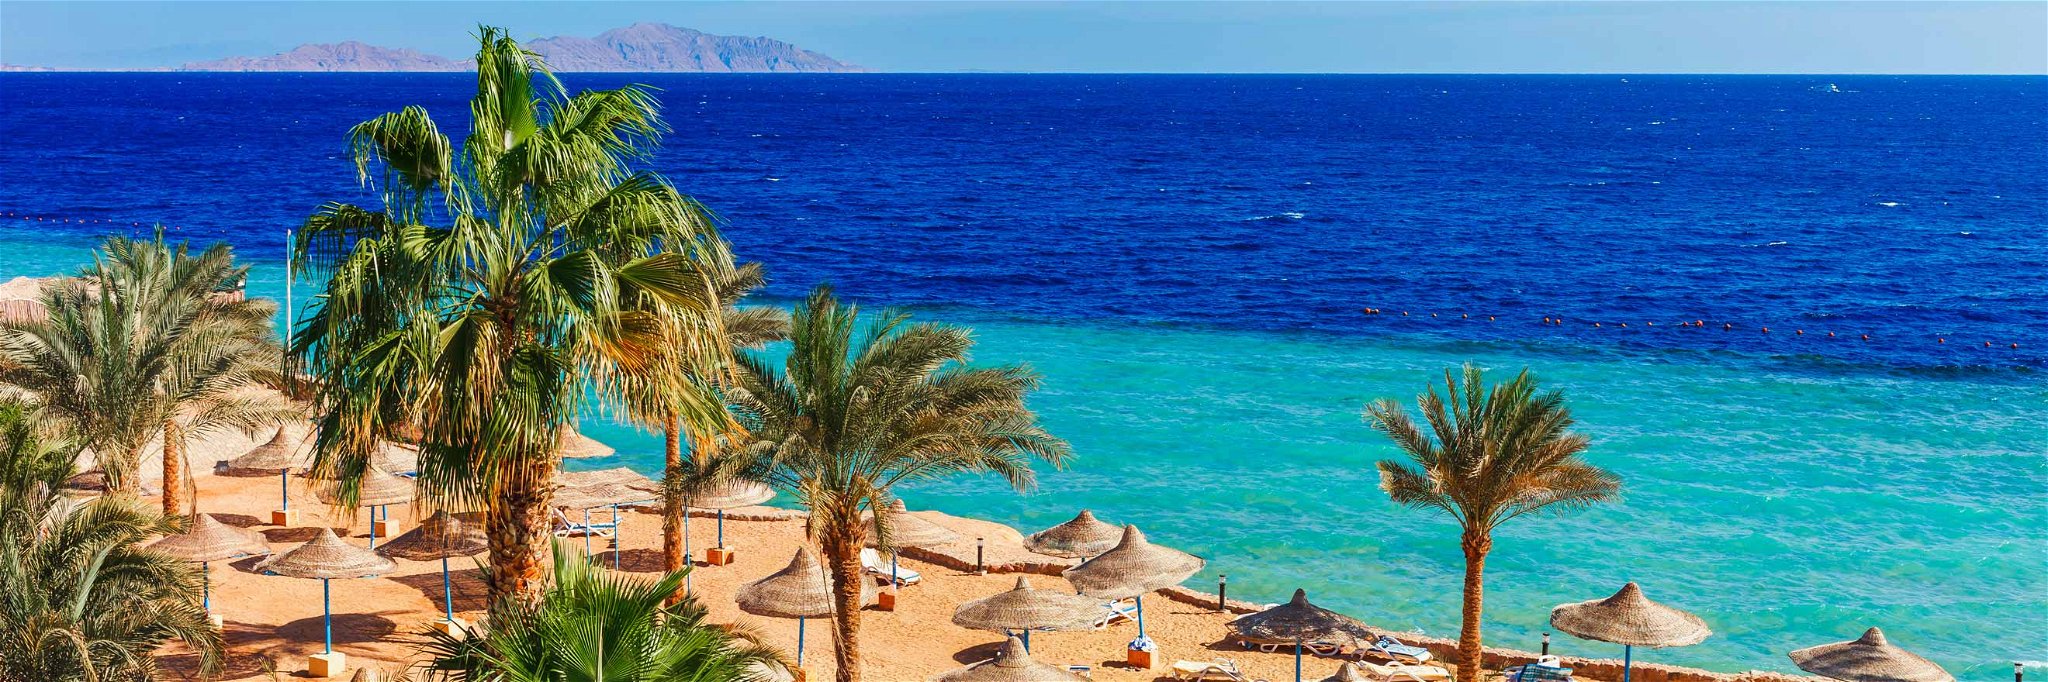 Hurghada führt die Liste der meistgebuchten Osterdestinationen an.